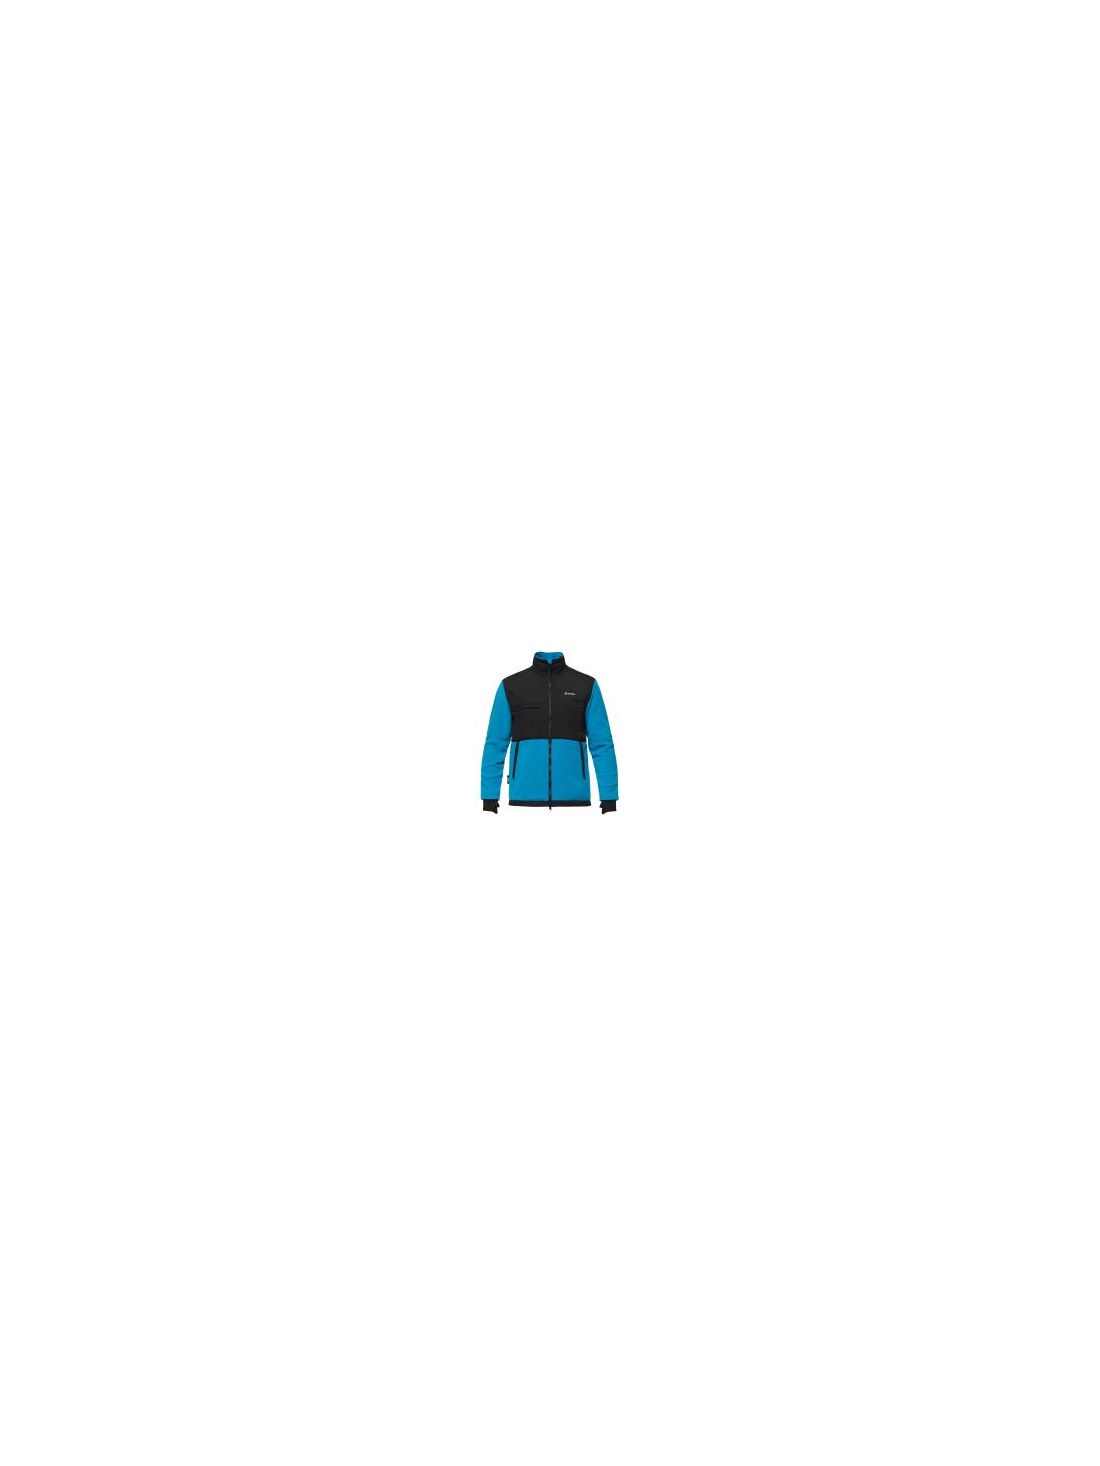 Куртка мужская флисовая Bask Stewart V3